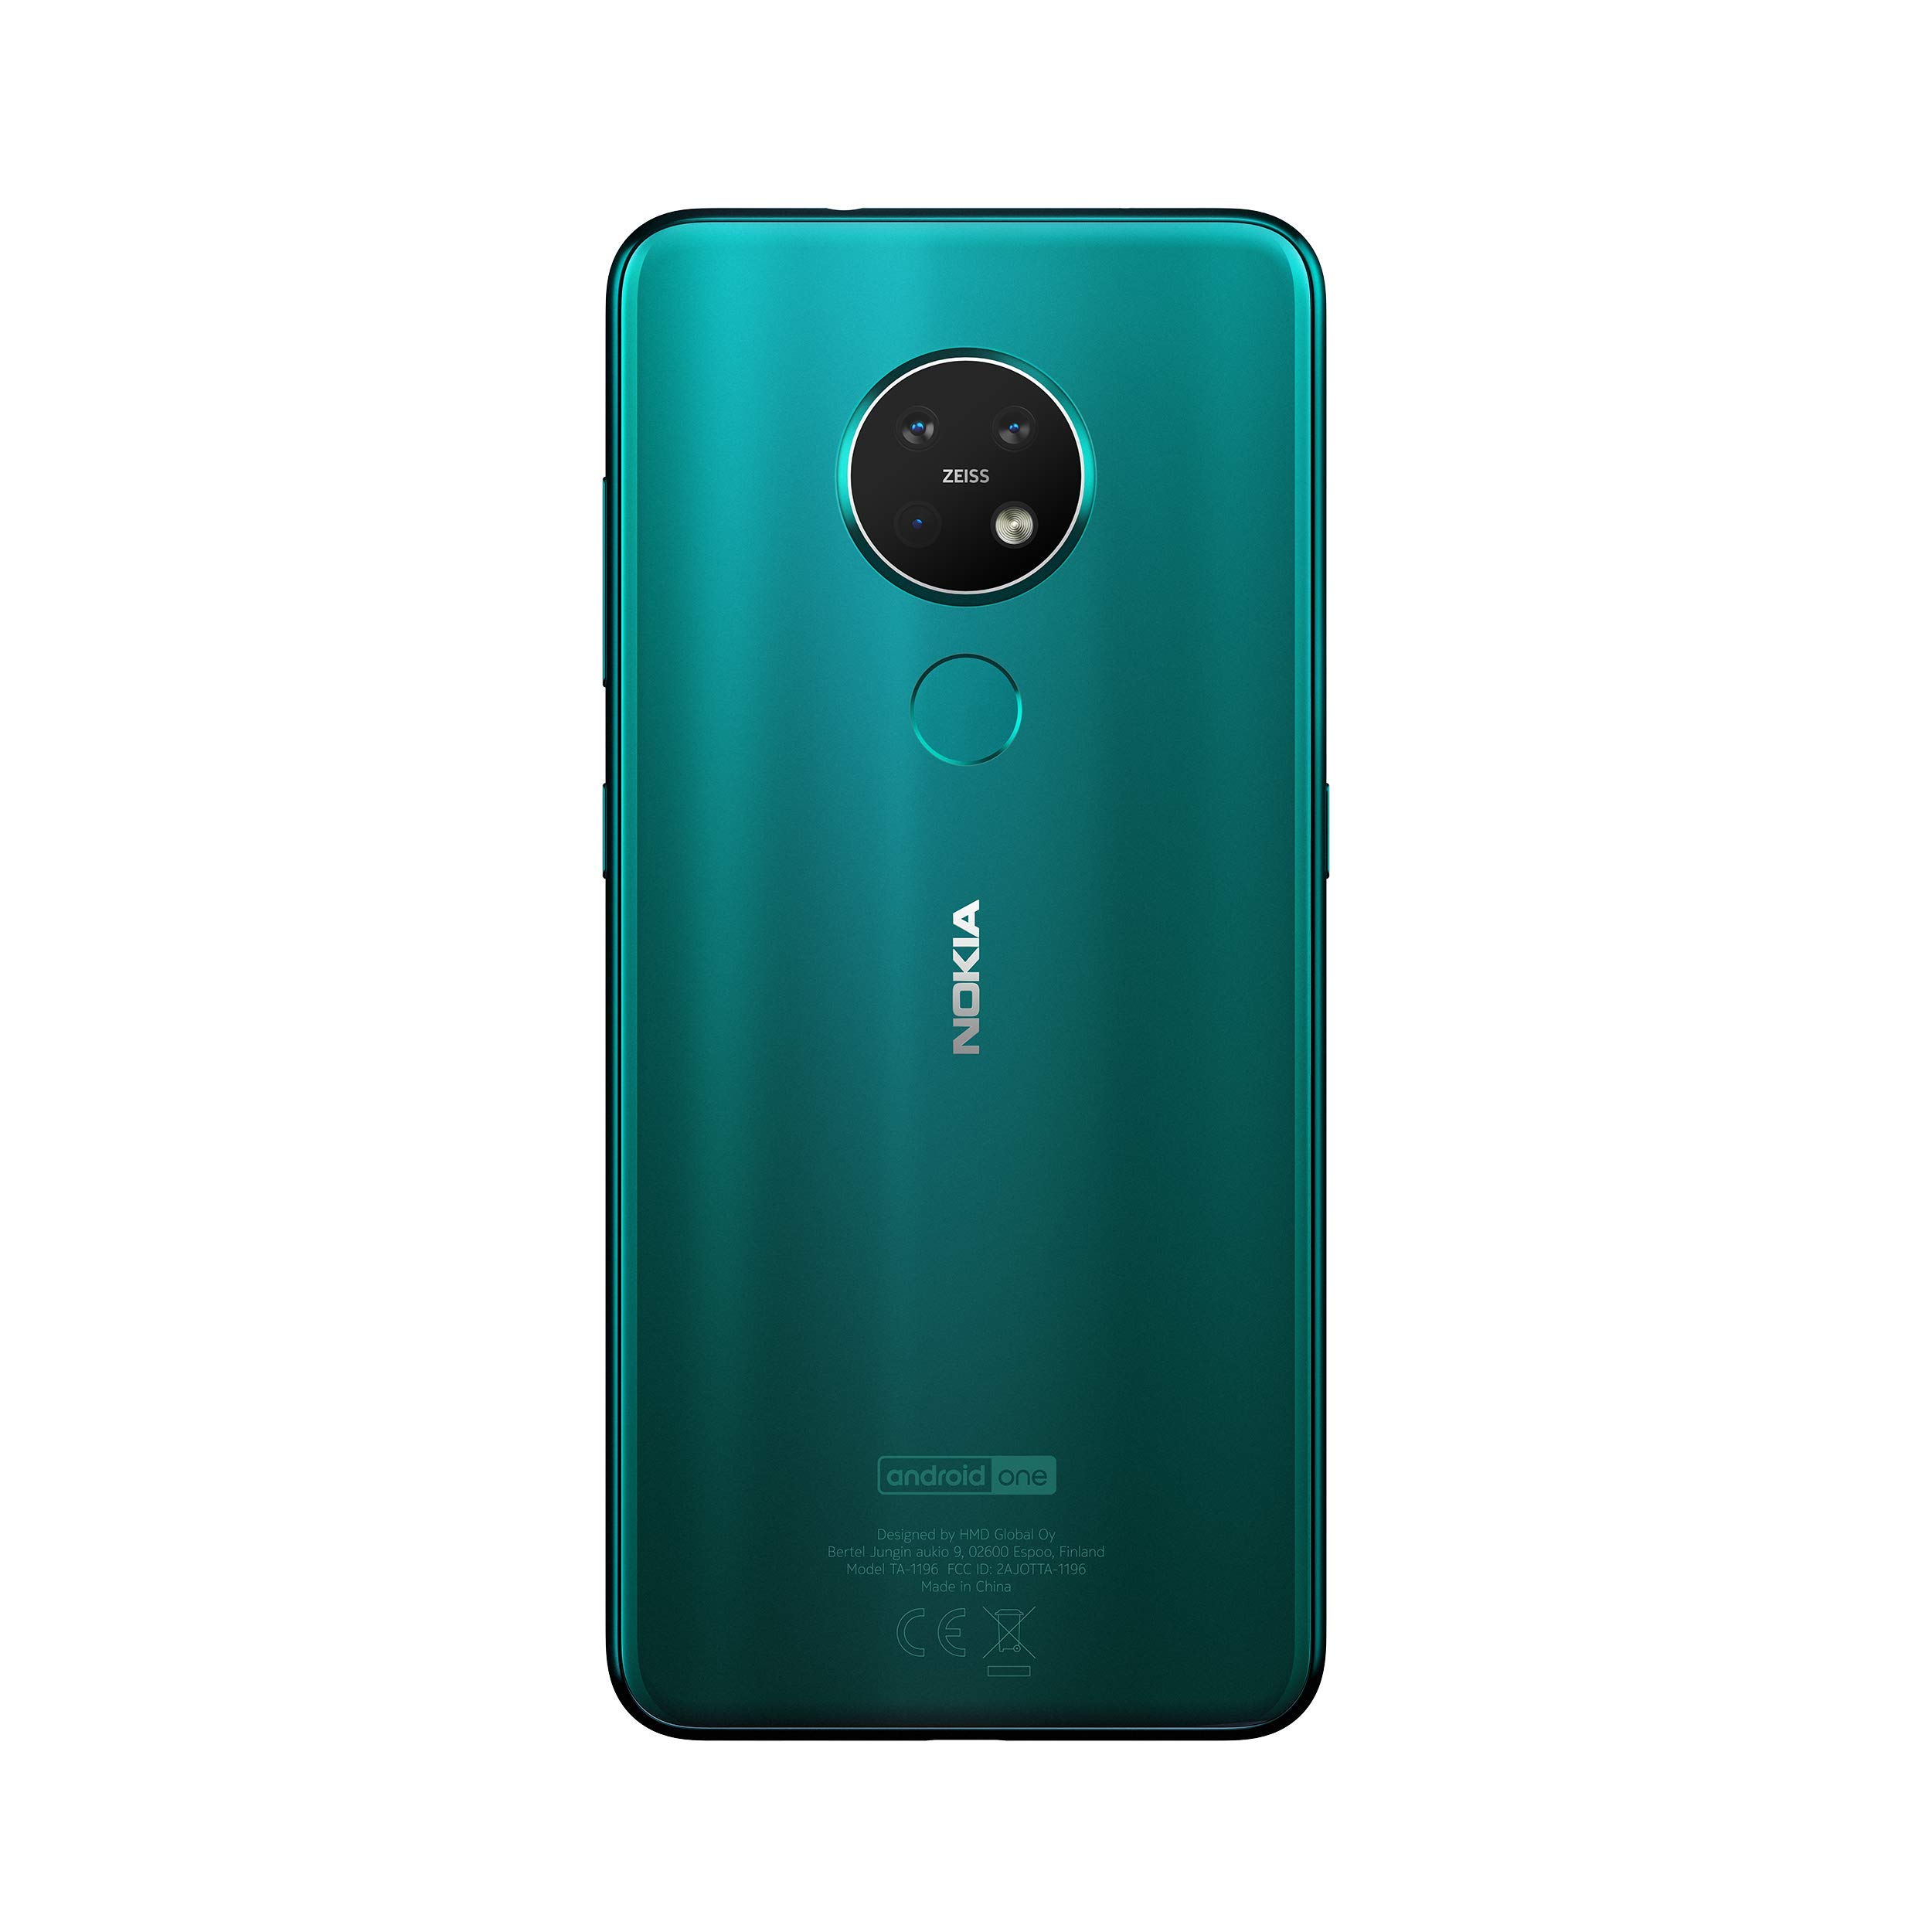 Nokia 7,2 64GB LTE DS cyan green Smartphone (2019) sehr gut